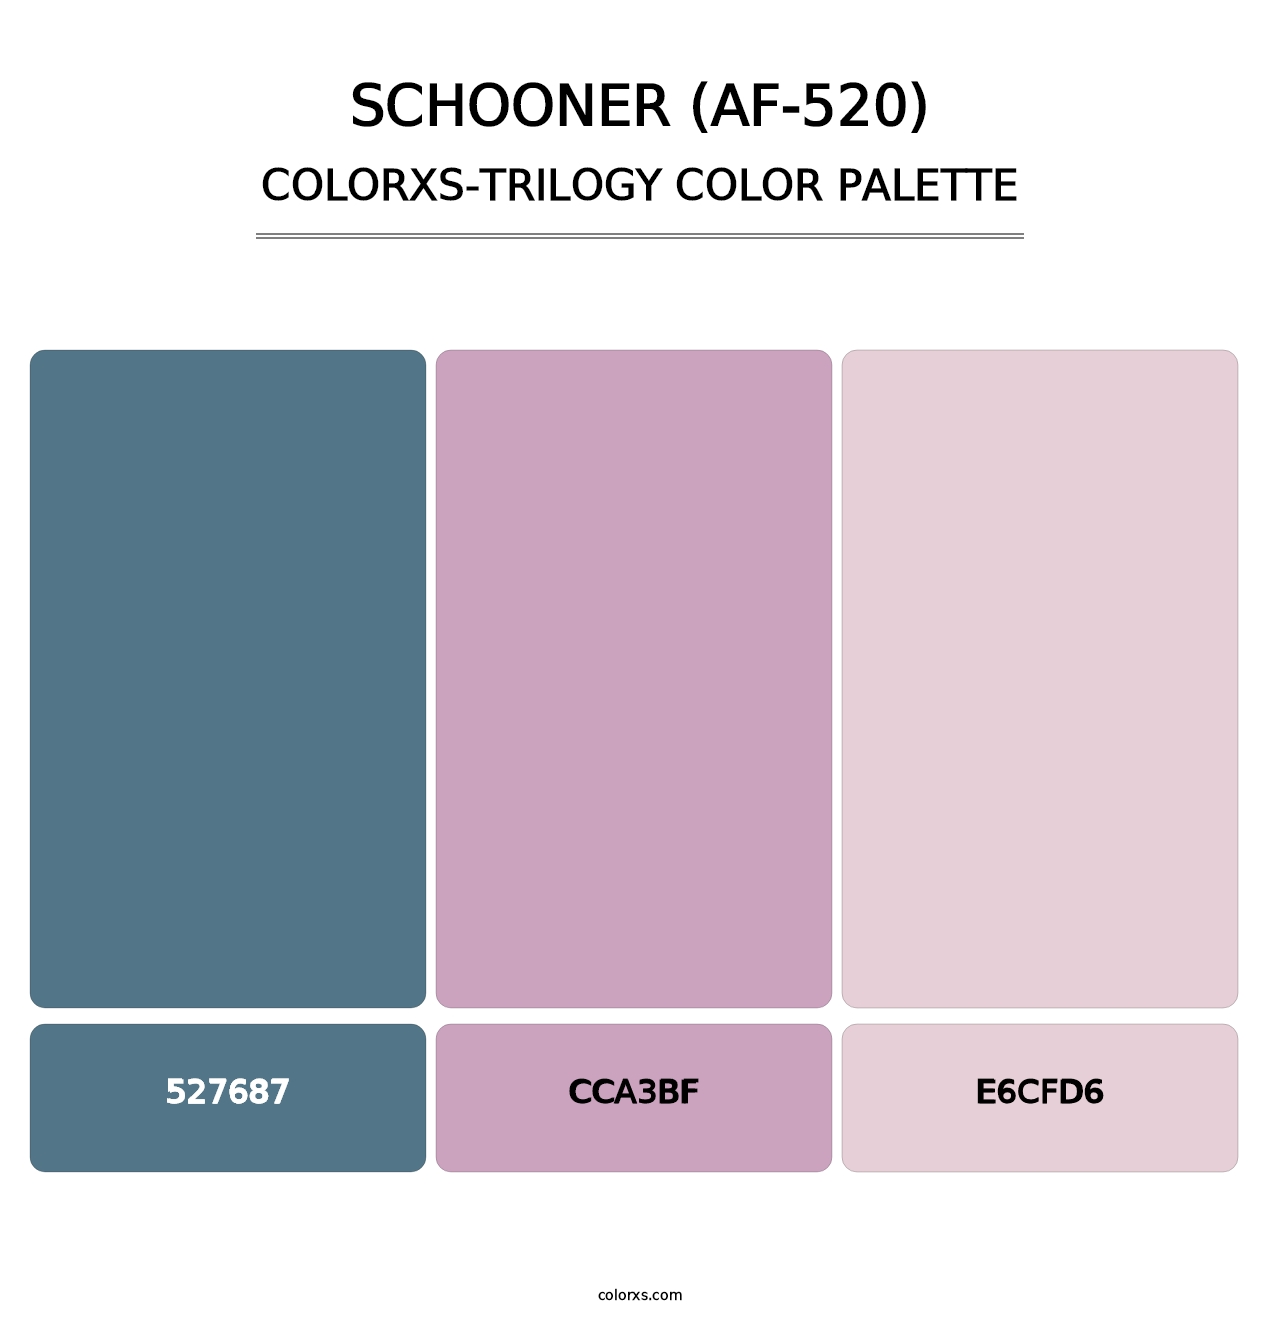 Schooner (AF-520) - Colorxs Trilogy Palette